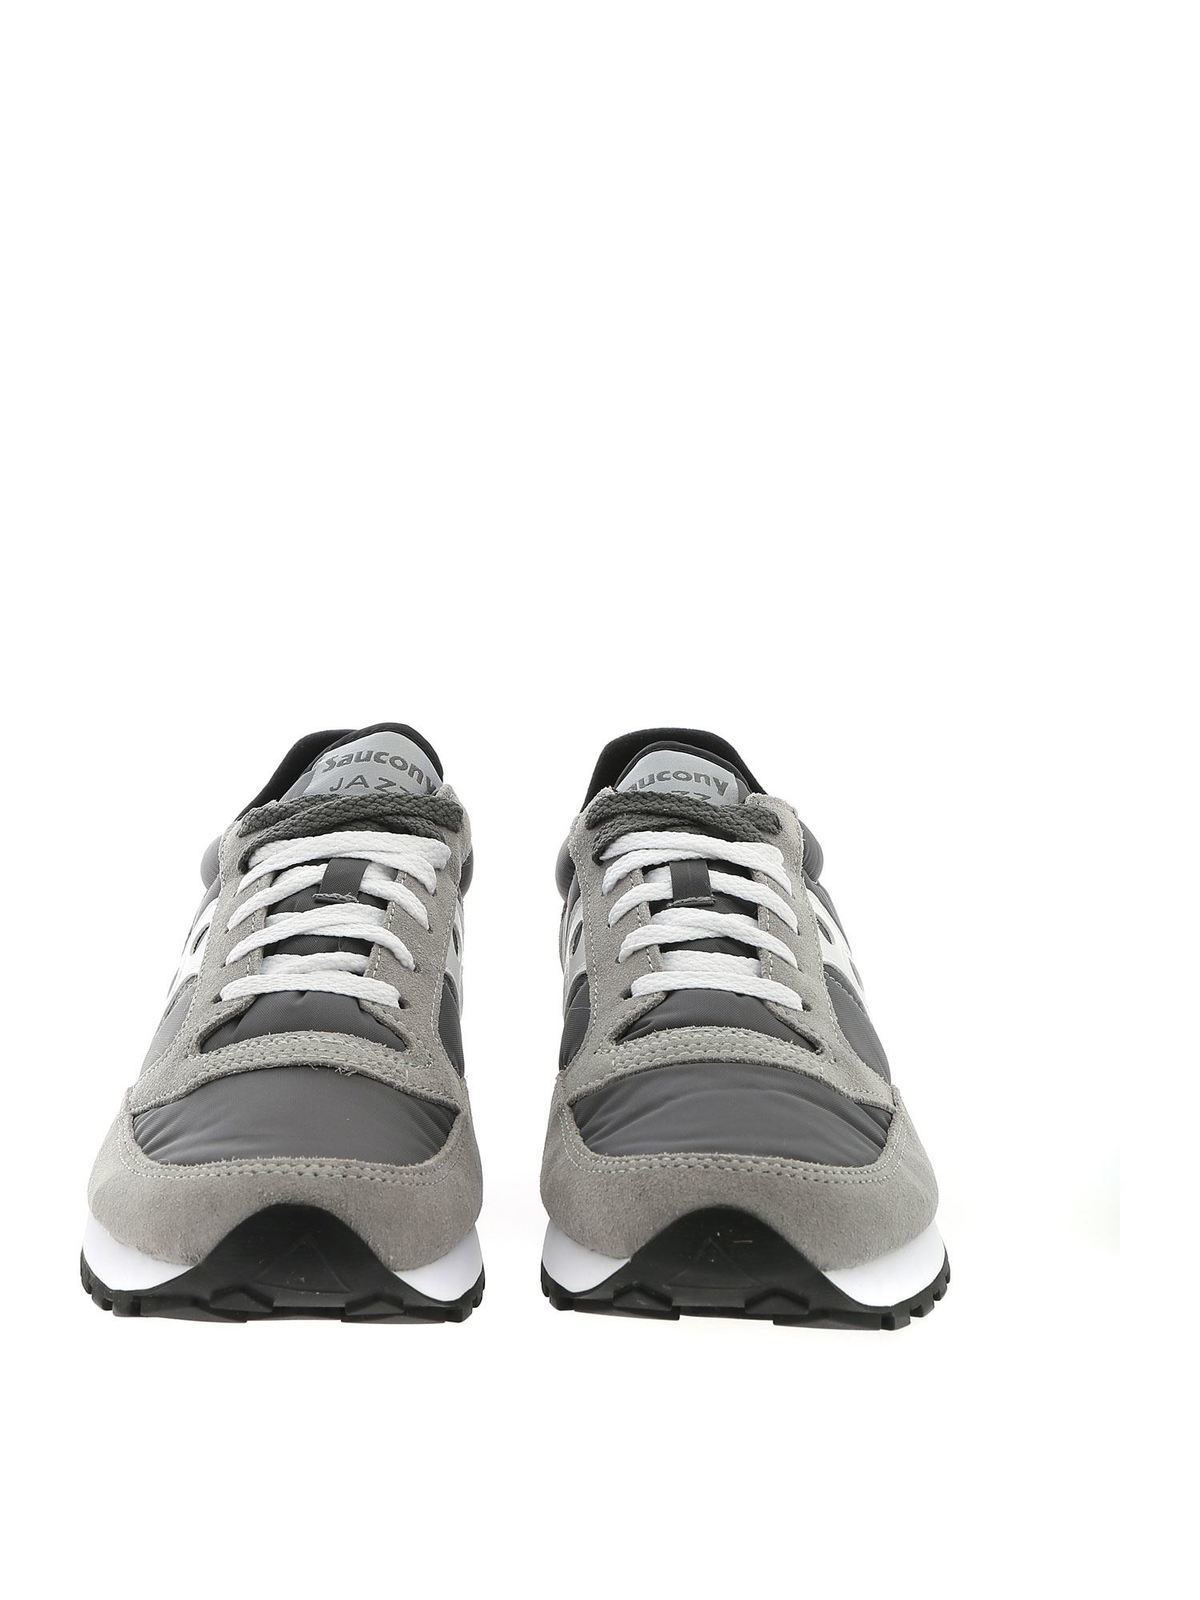 Saucony - Sneakers Jazz Original nere e grigie - sneakers - S2044553